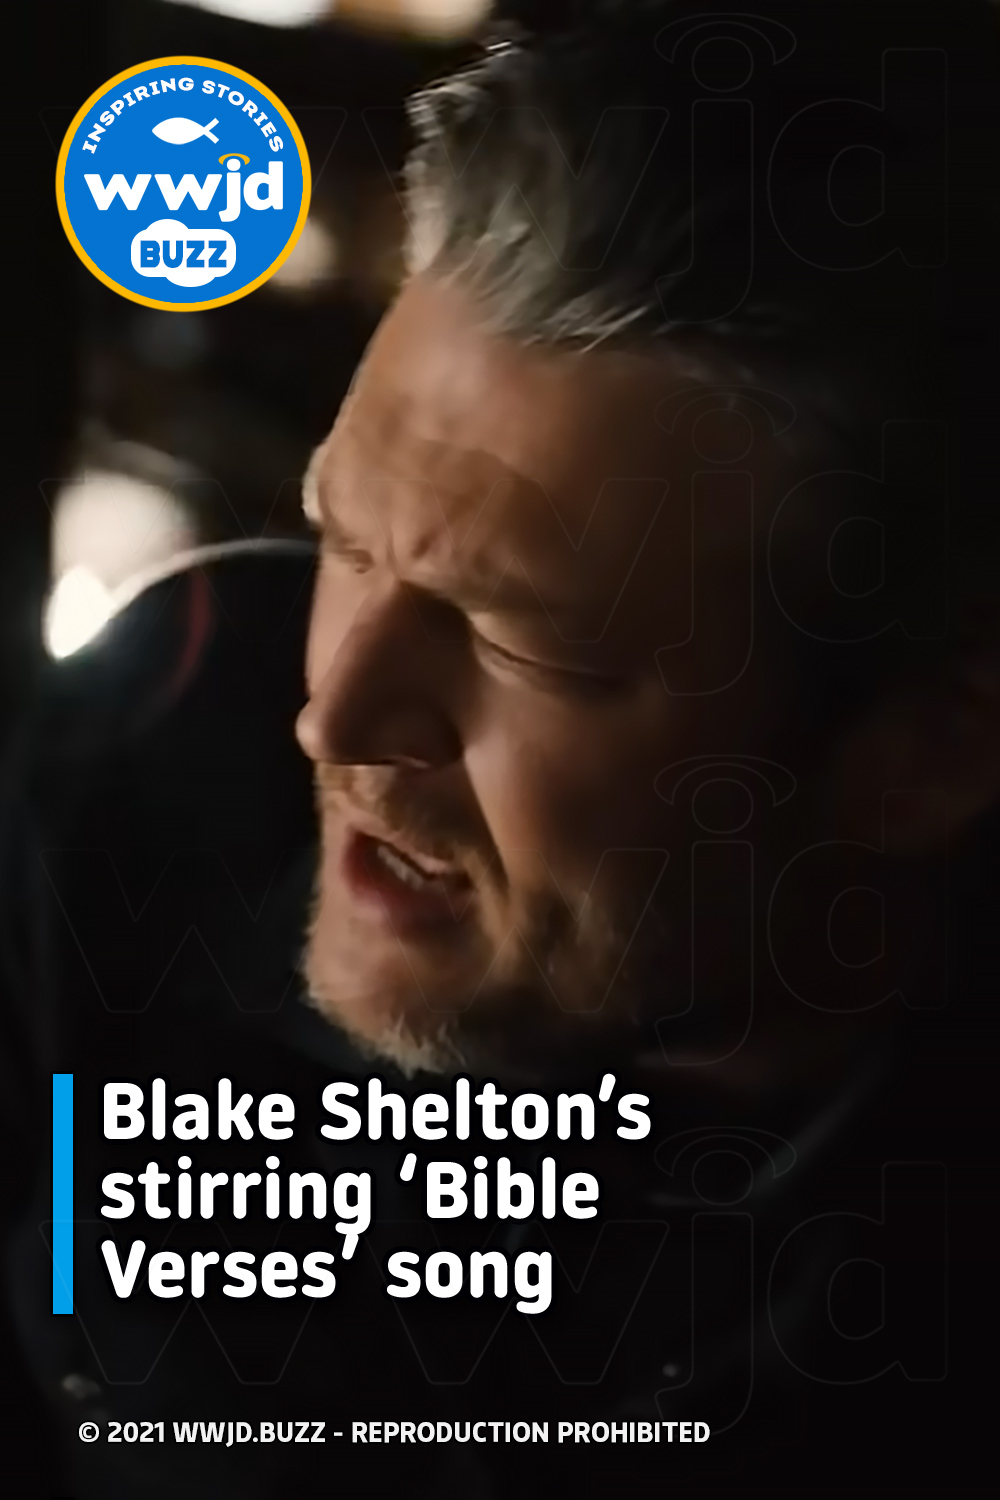 Blake Shelton’s stirring ‘Bible Verses’ song